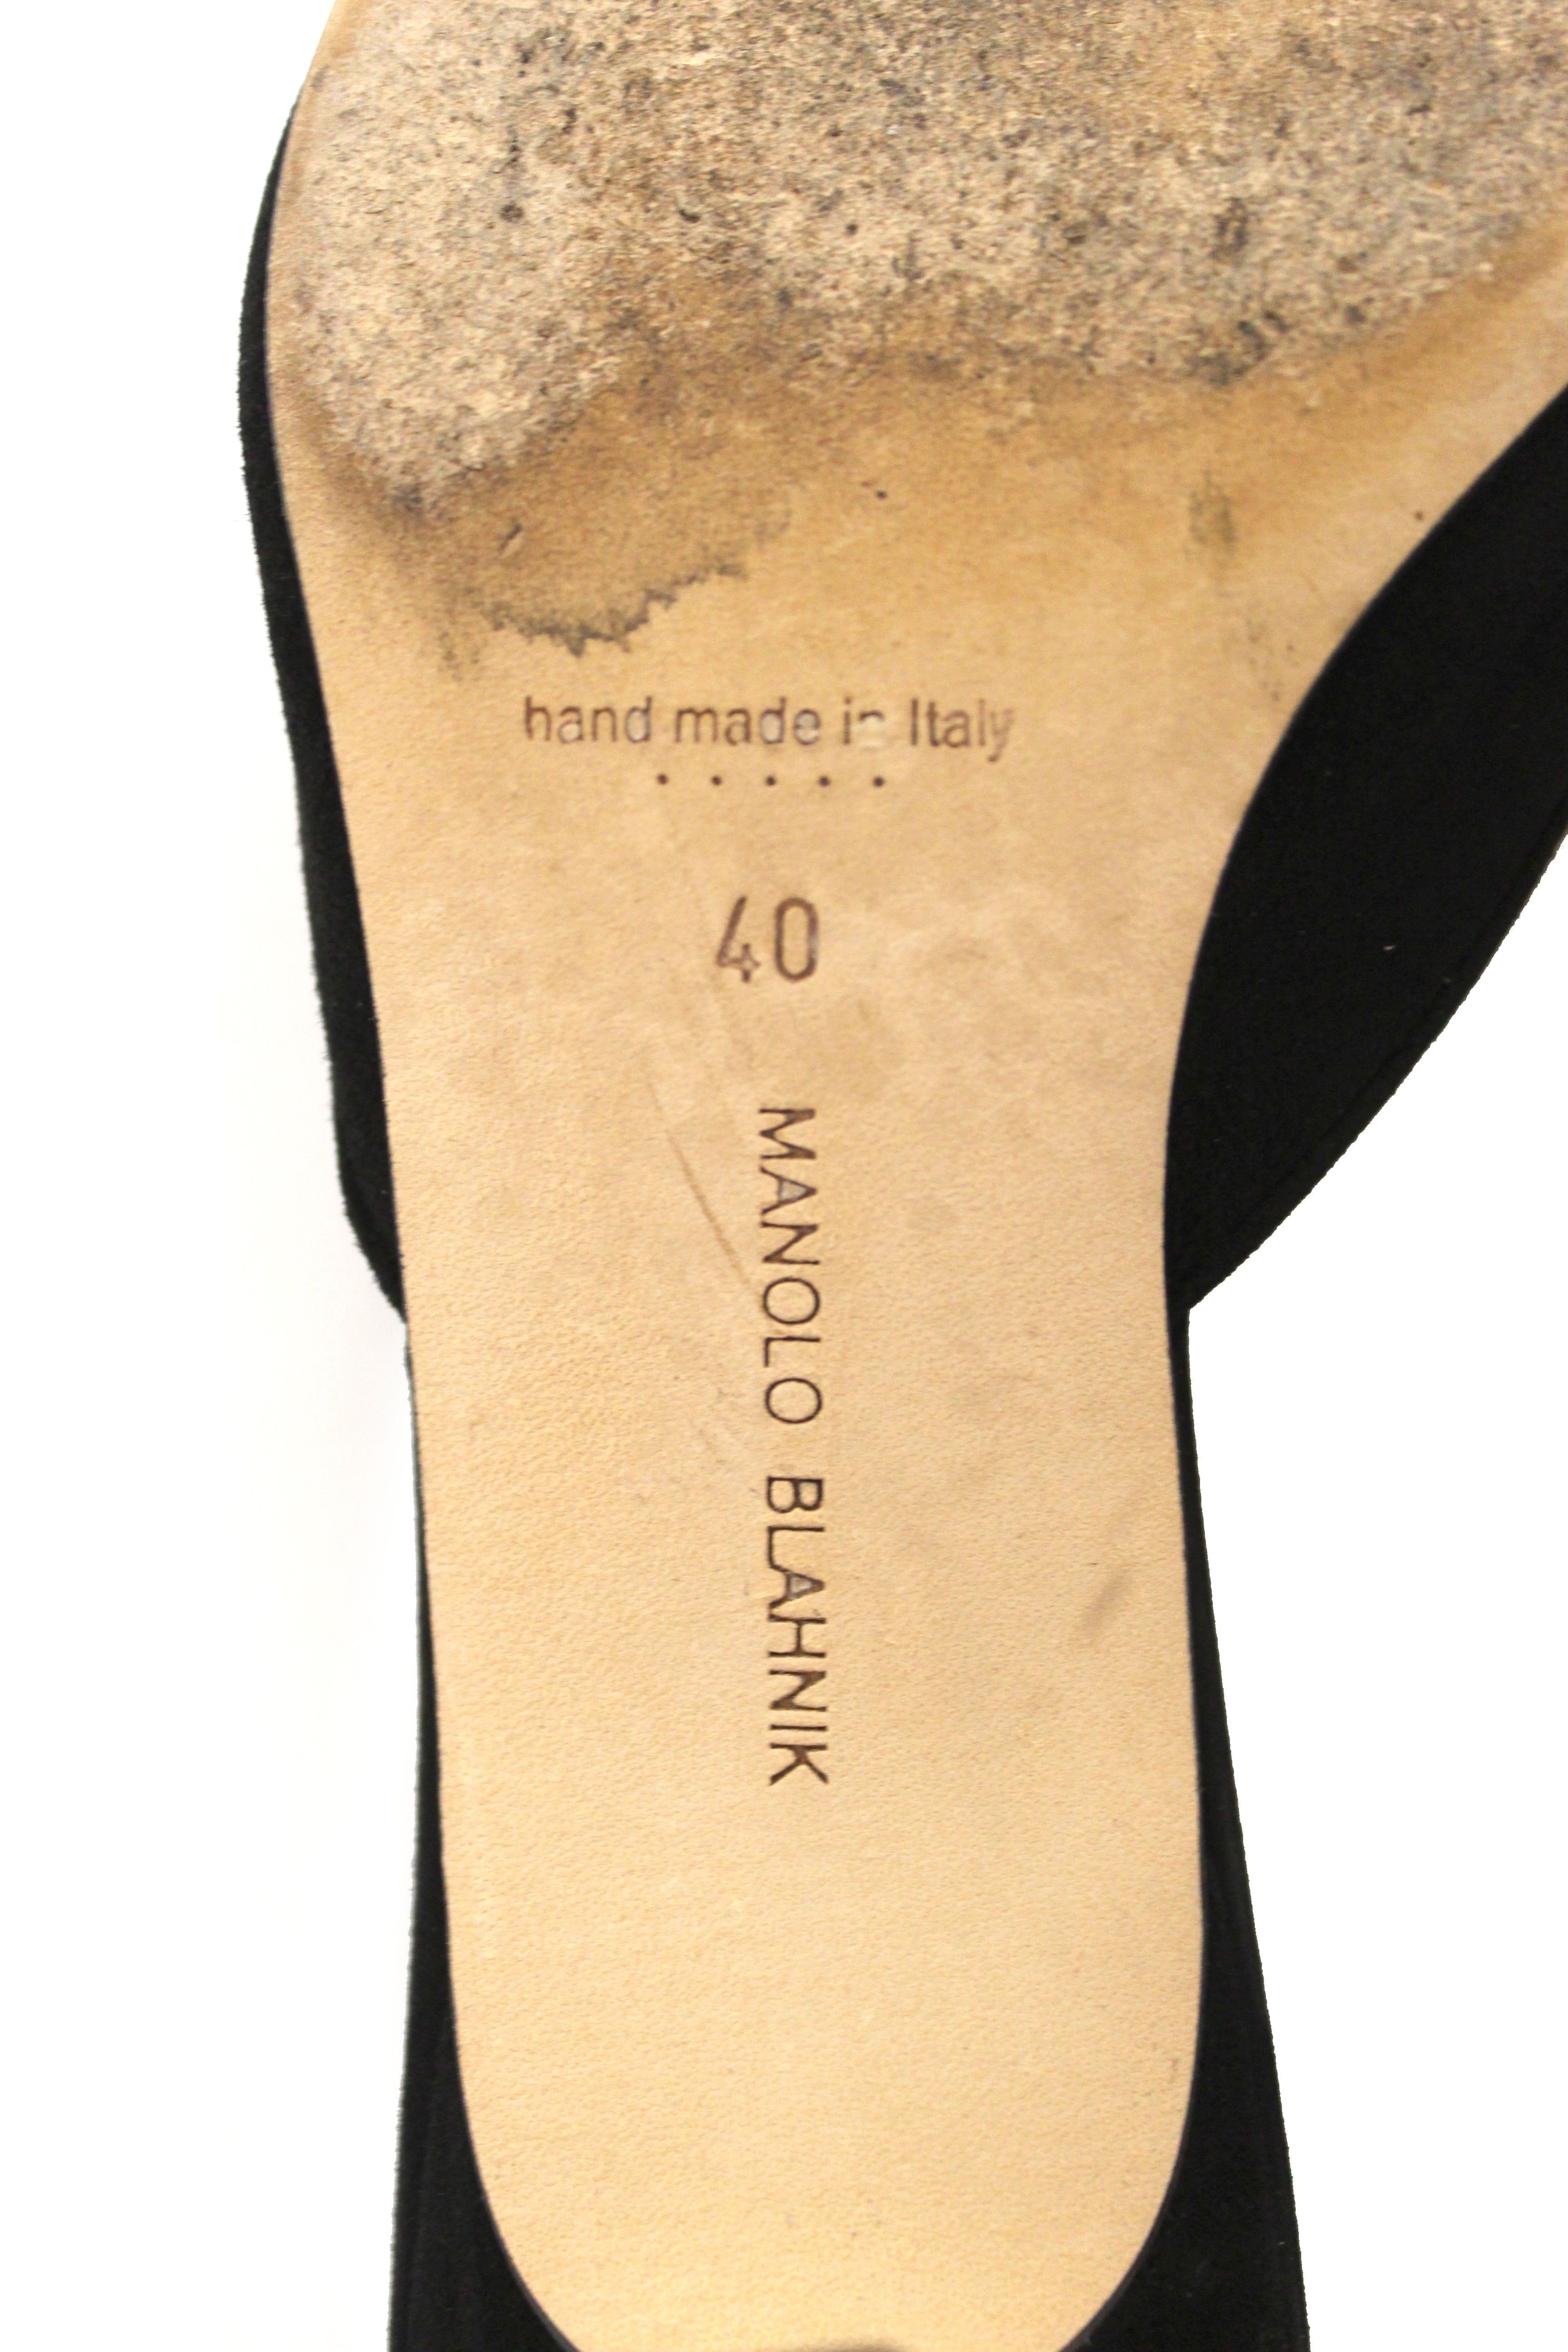 Authentic Manolo Blahnik Maysale Black Suede Mules Shoes Size 40